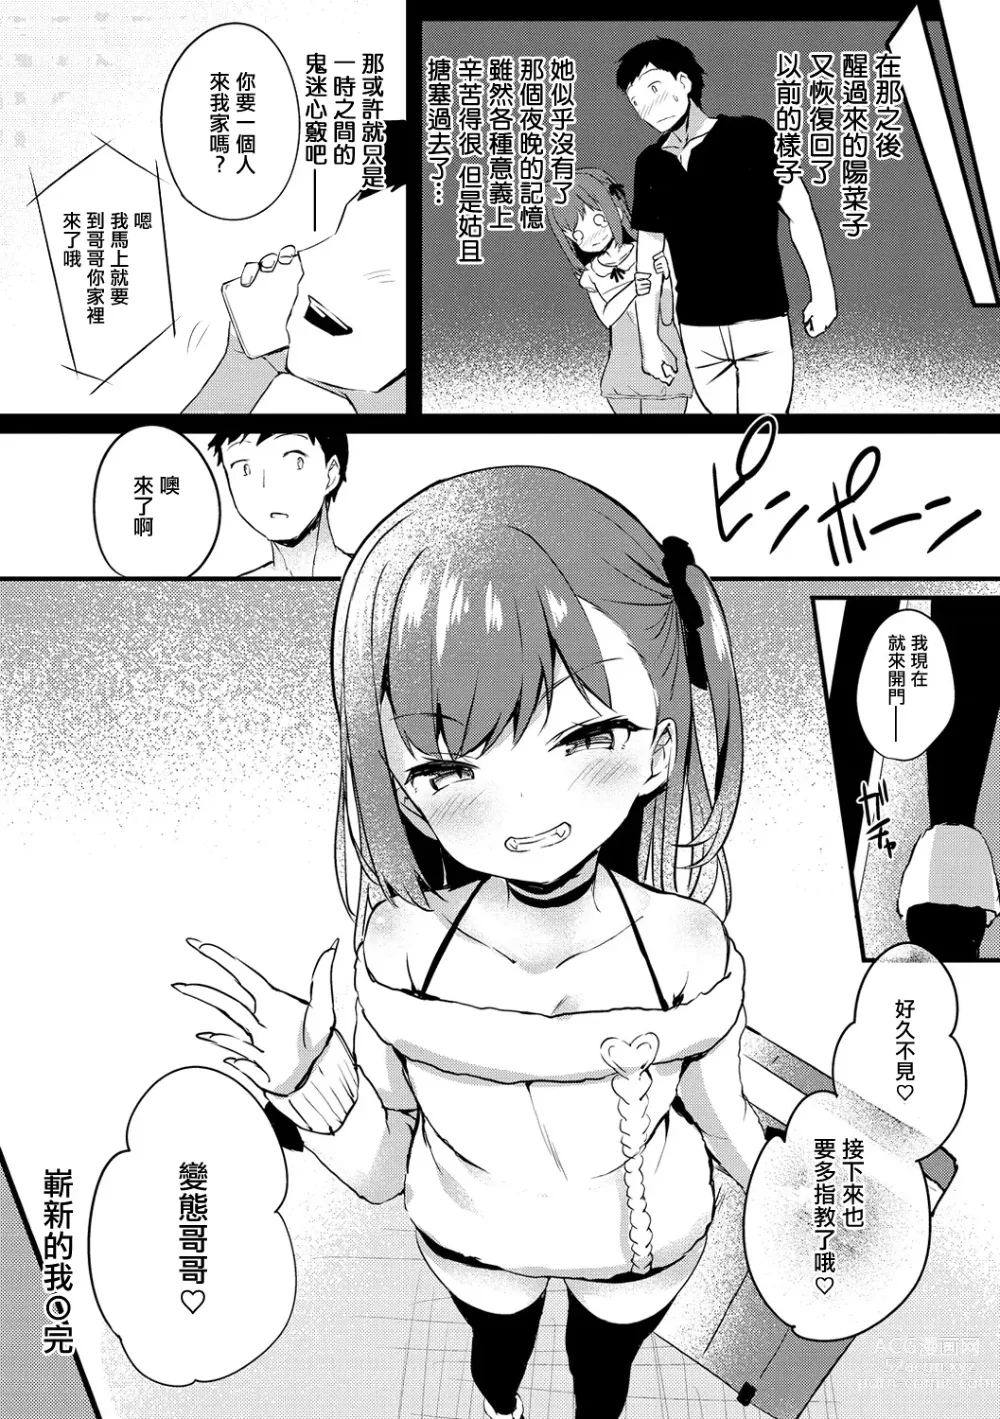 Page 22 of manga Atarashii Watashi